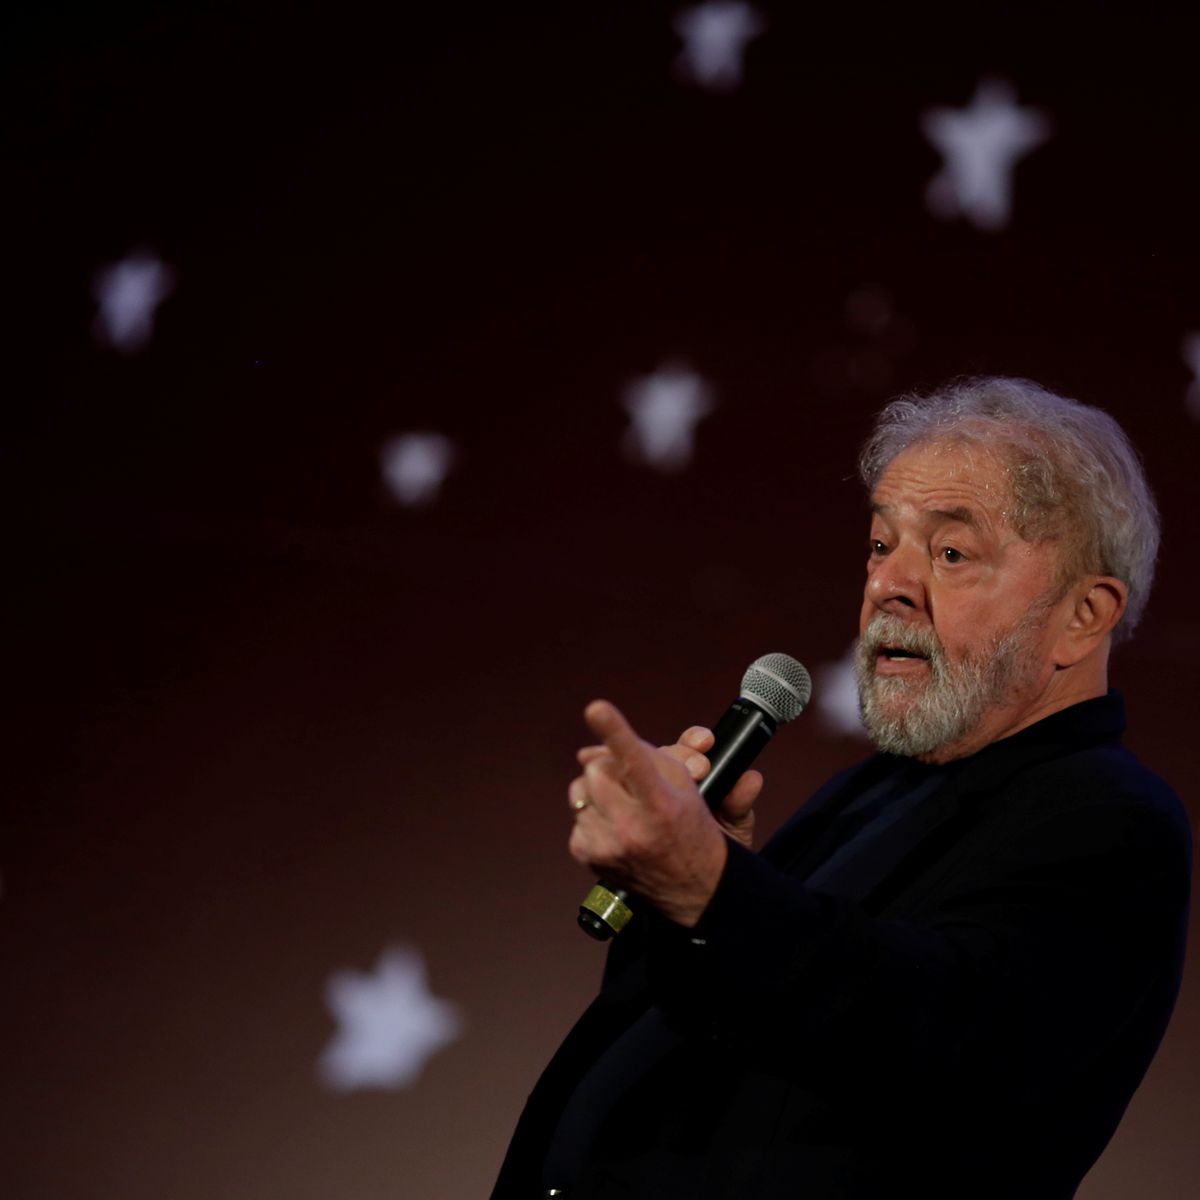 Brésil - L’enquête ayant conduit Lula en prison n’a pas respecté ses droits selon l’ONU